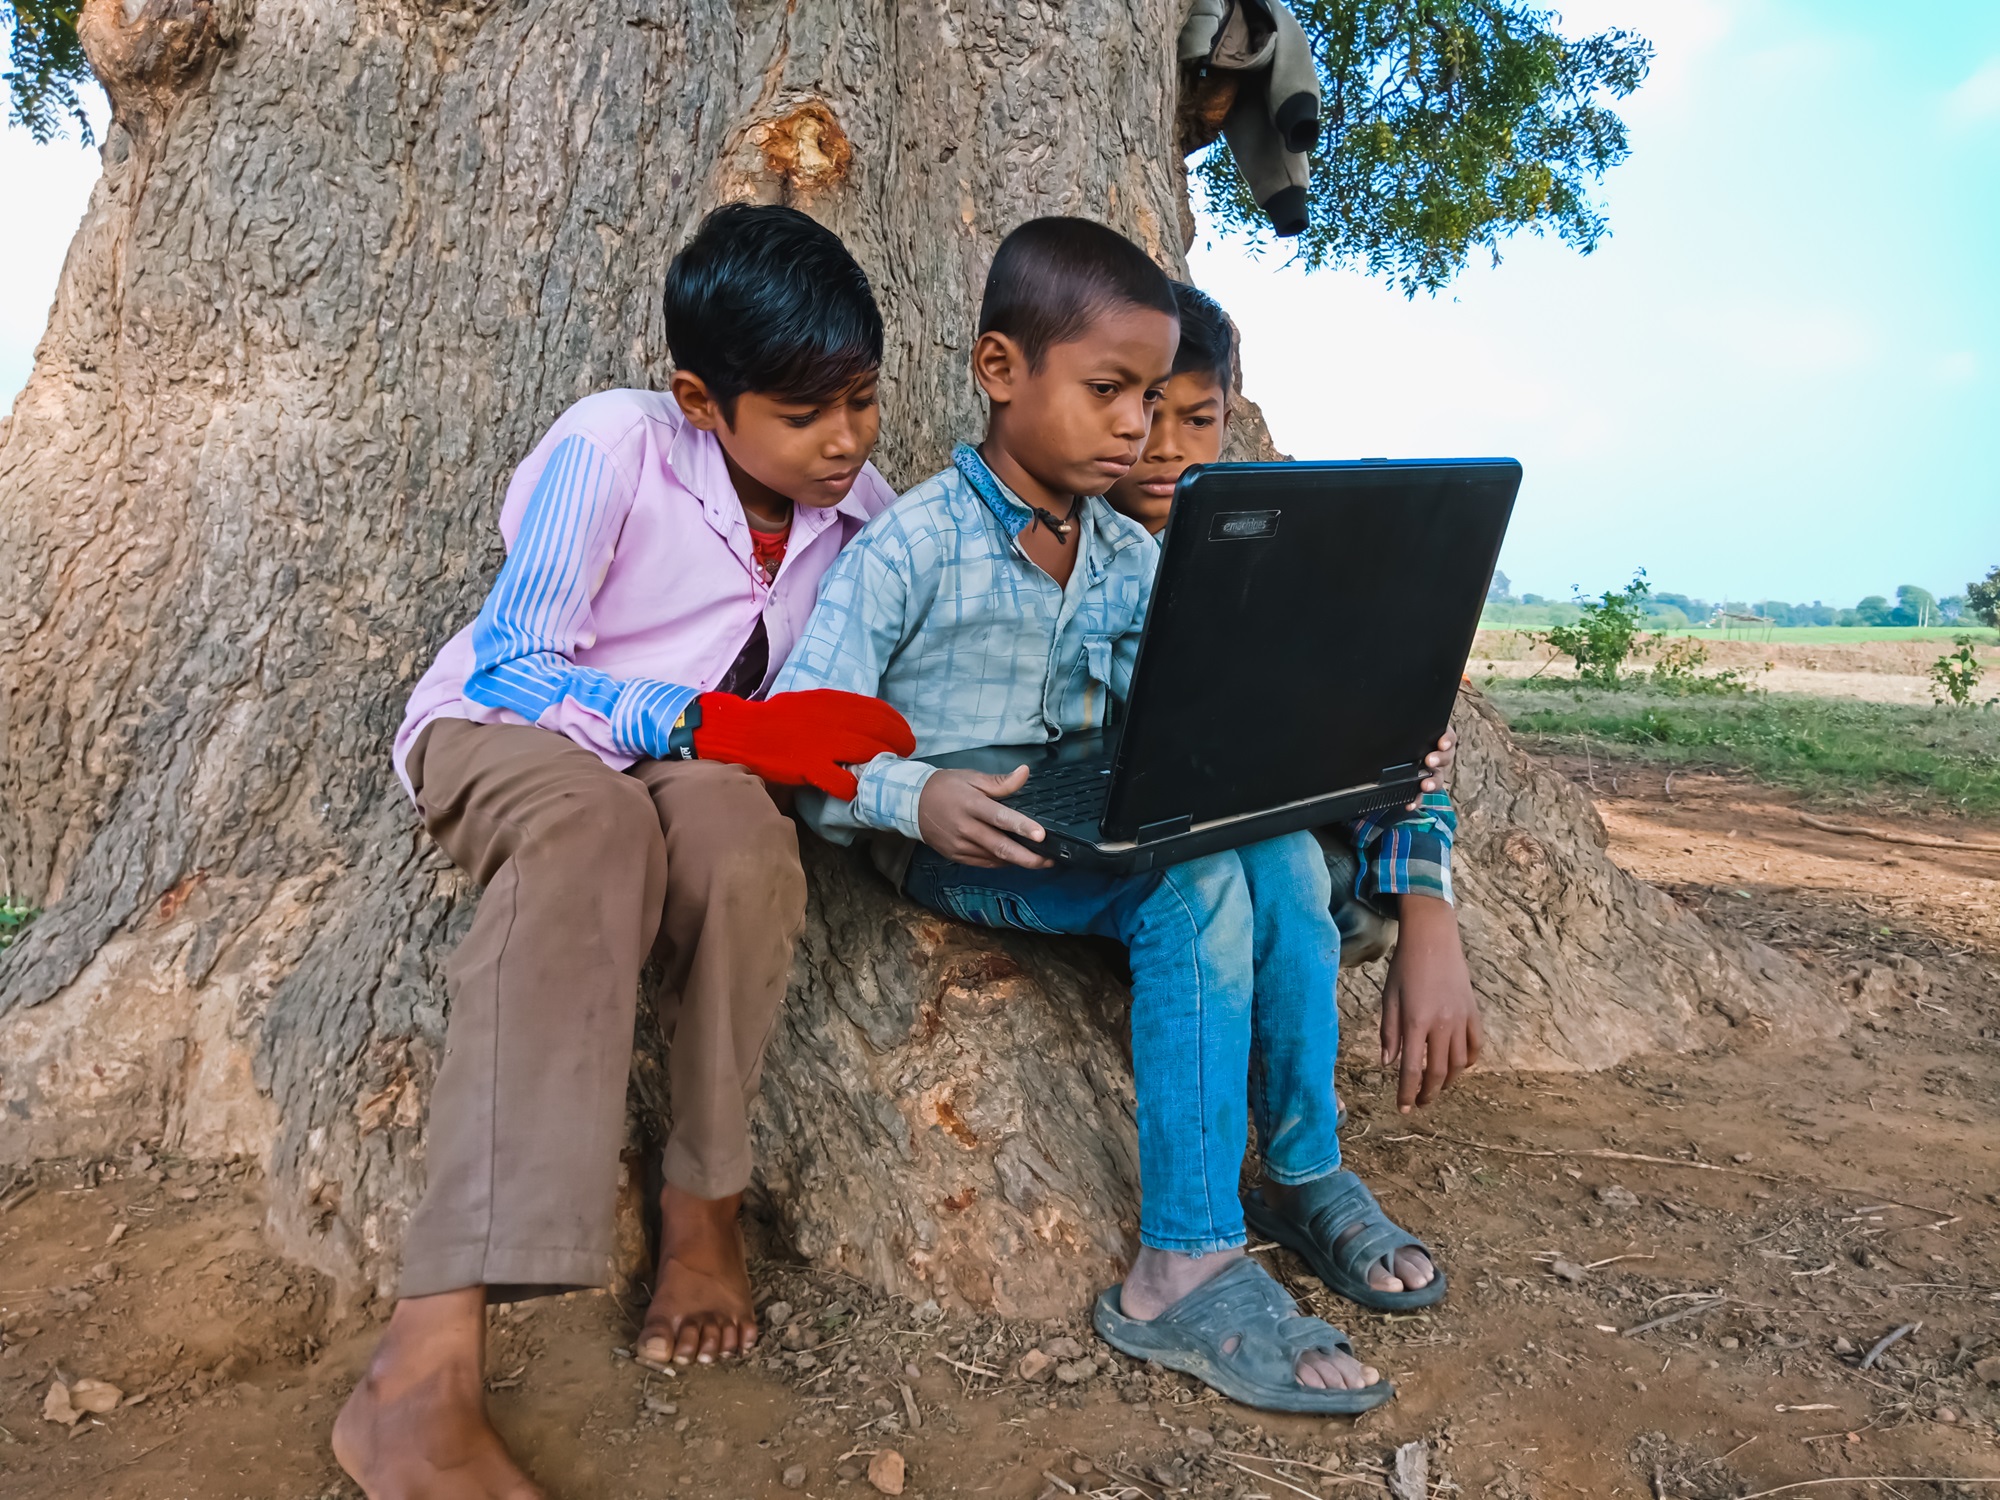 التكنولوجيا ودورها الحيوي في تعزيز التعليم في المجتمعات الفقيرة